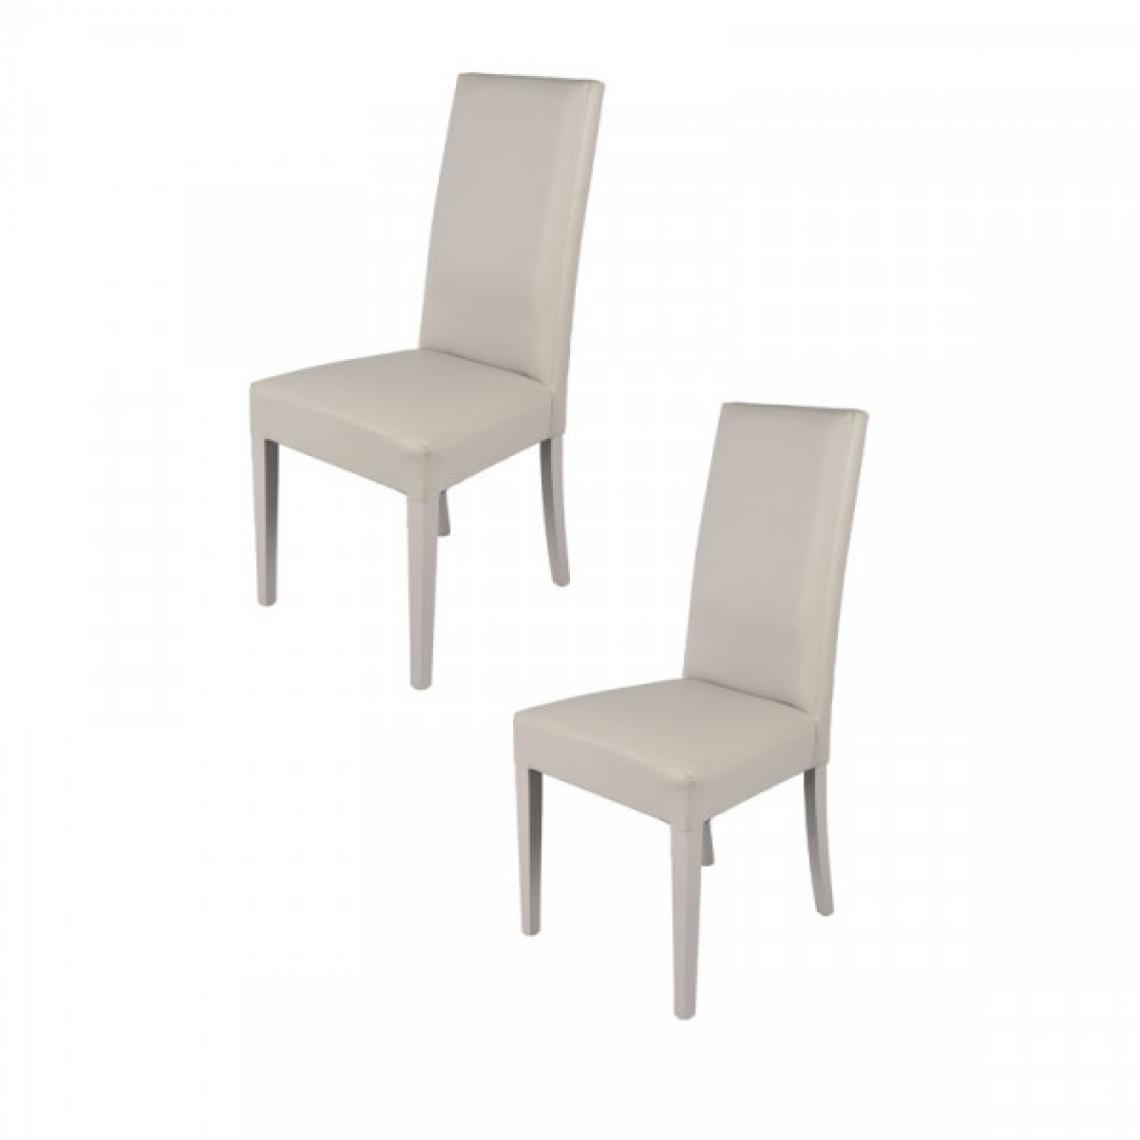 Dansmamaison - Duo de chaises en similicuir Gris clair - VENISE - L 54 x l 46 x H 99 cm - Chaises